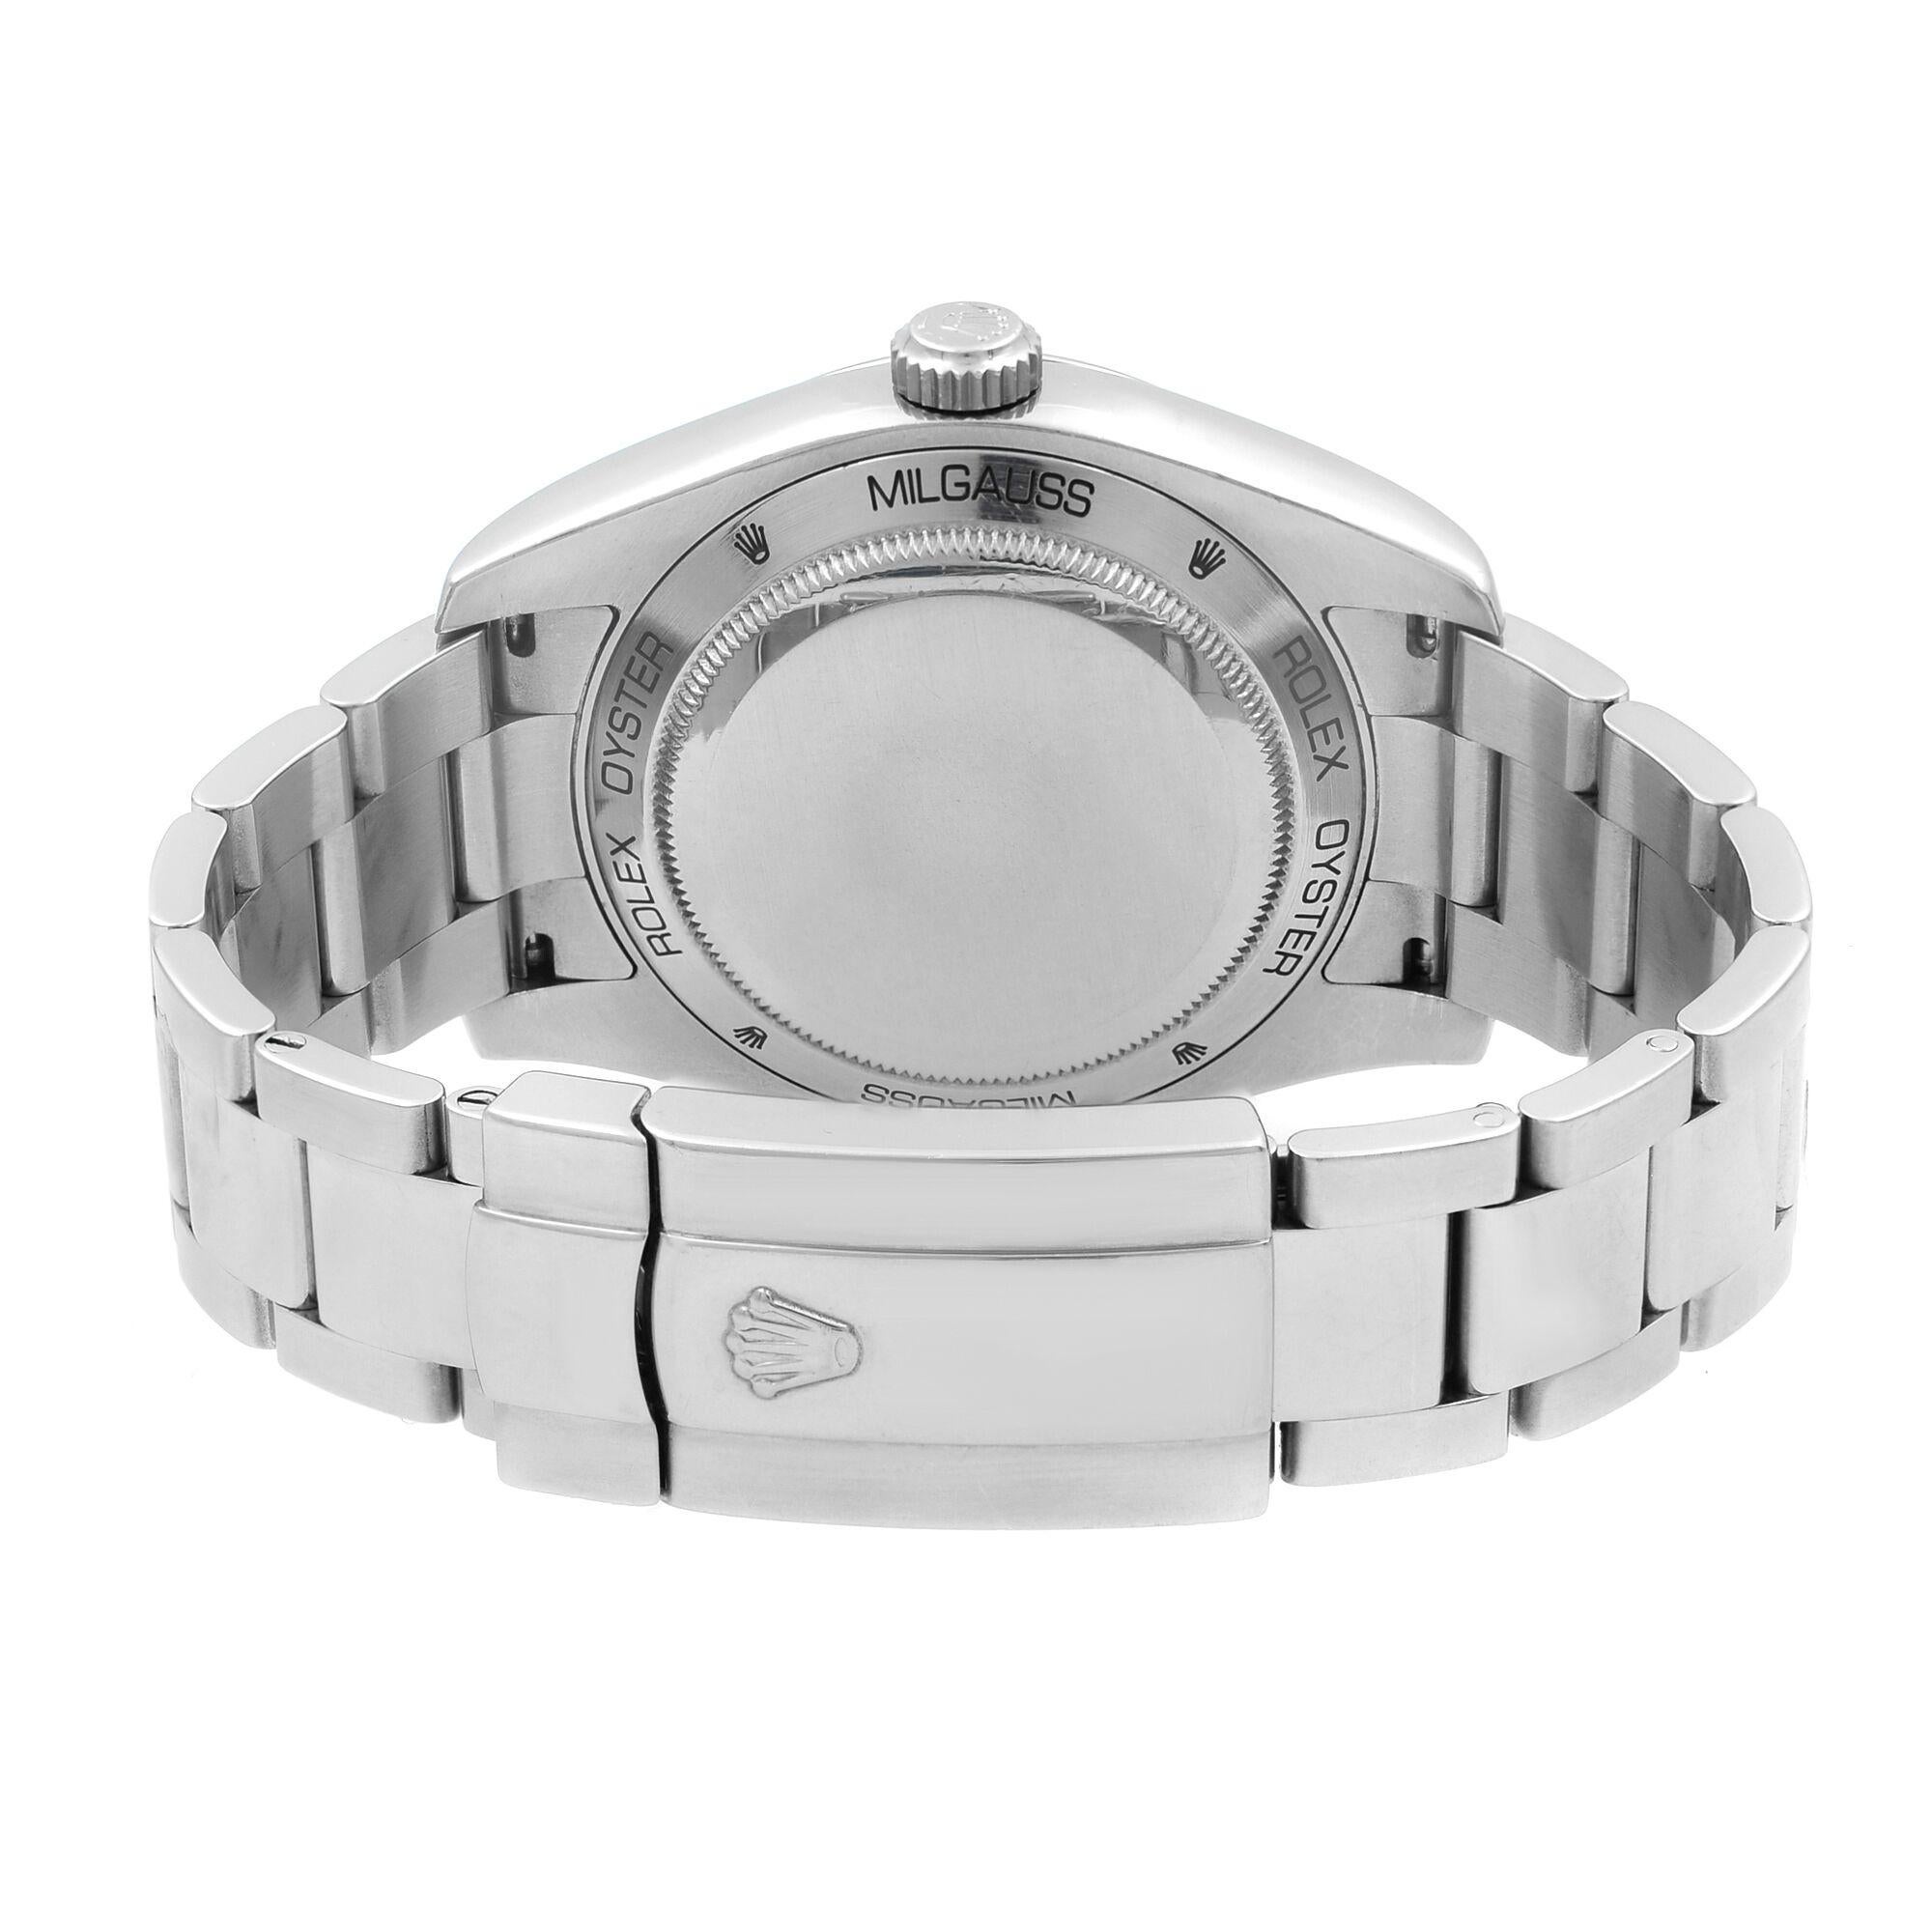 Rolex Milgauss Steel Black Dial Orange Hand Automatic Men's Watch 116400 BKO 1